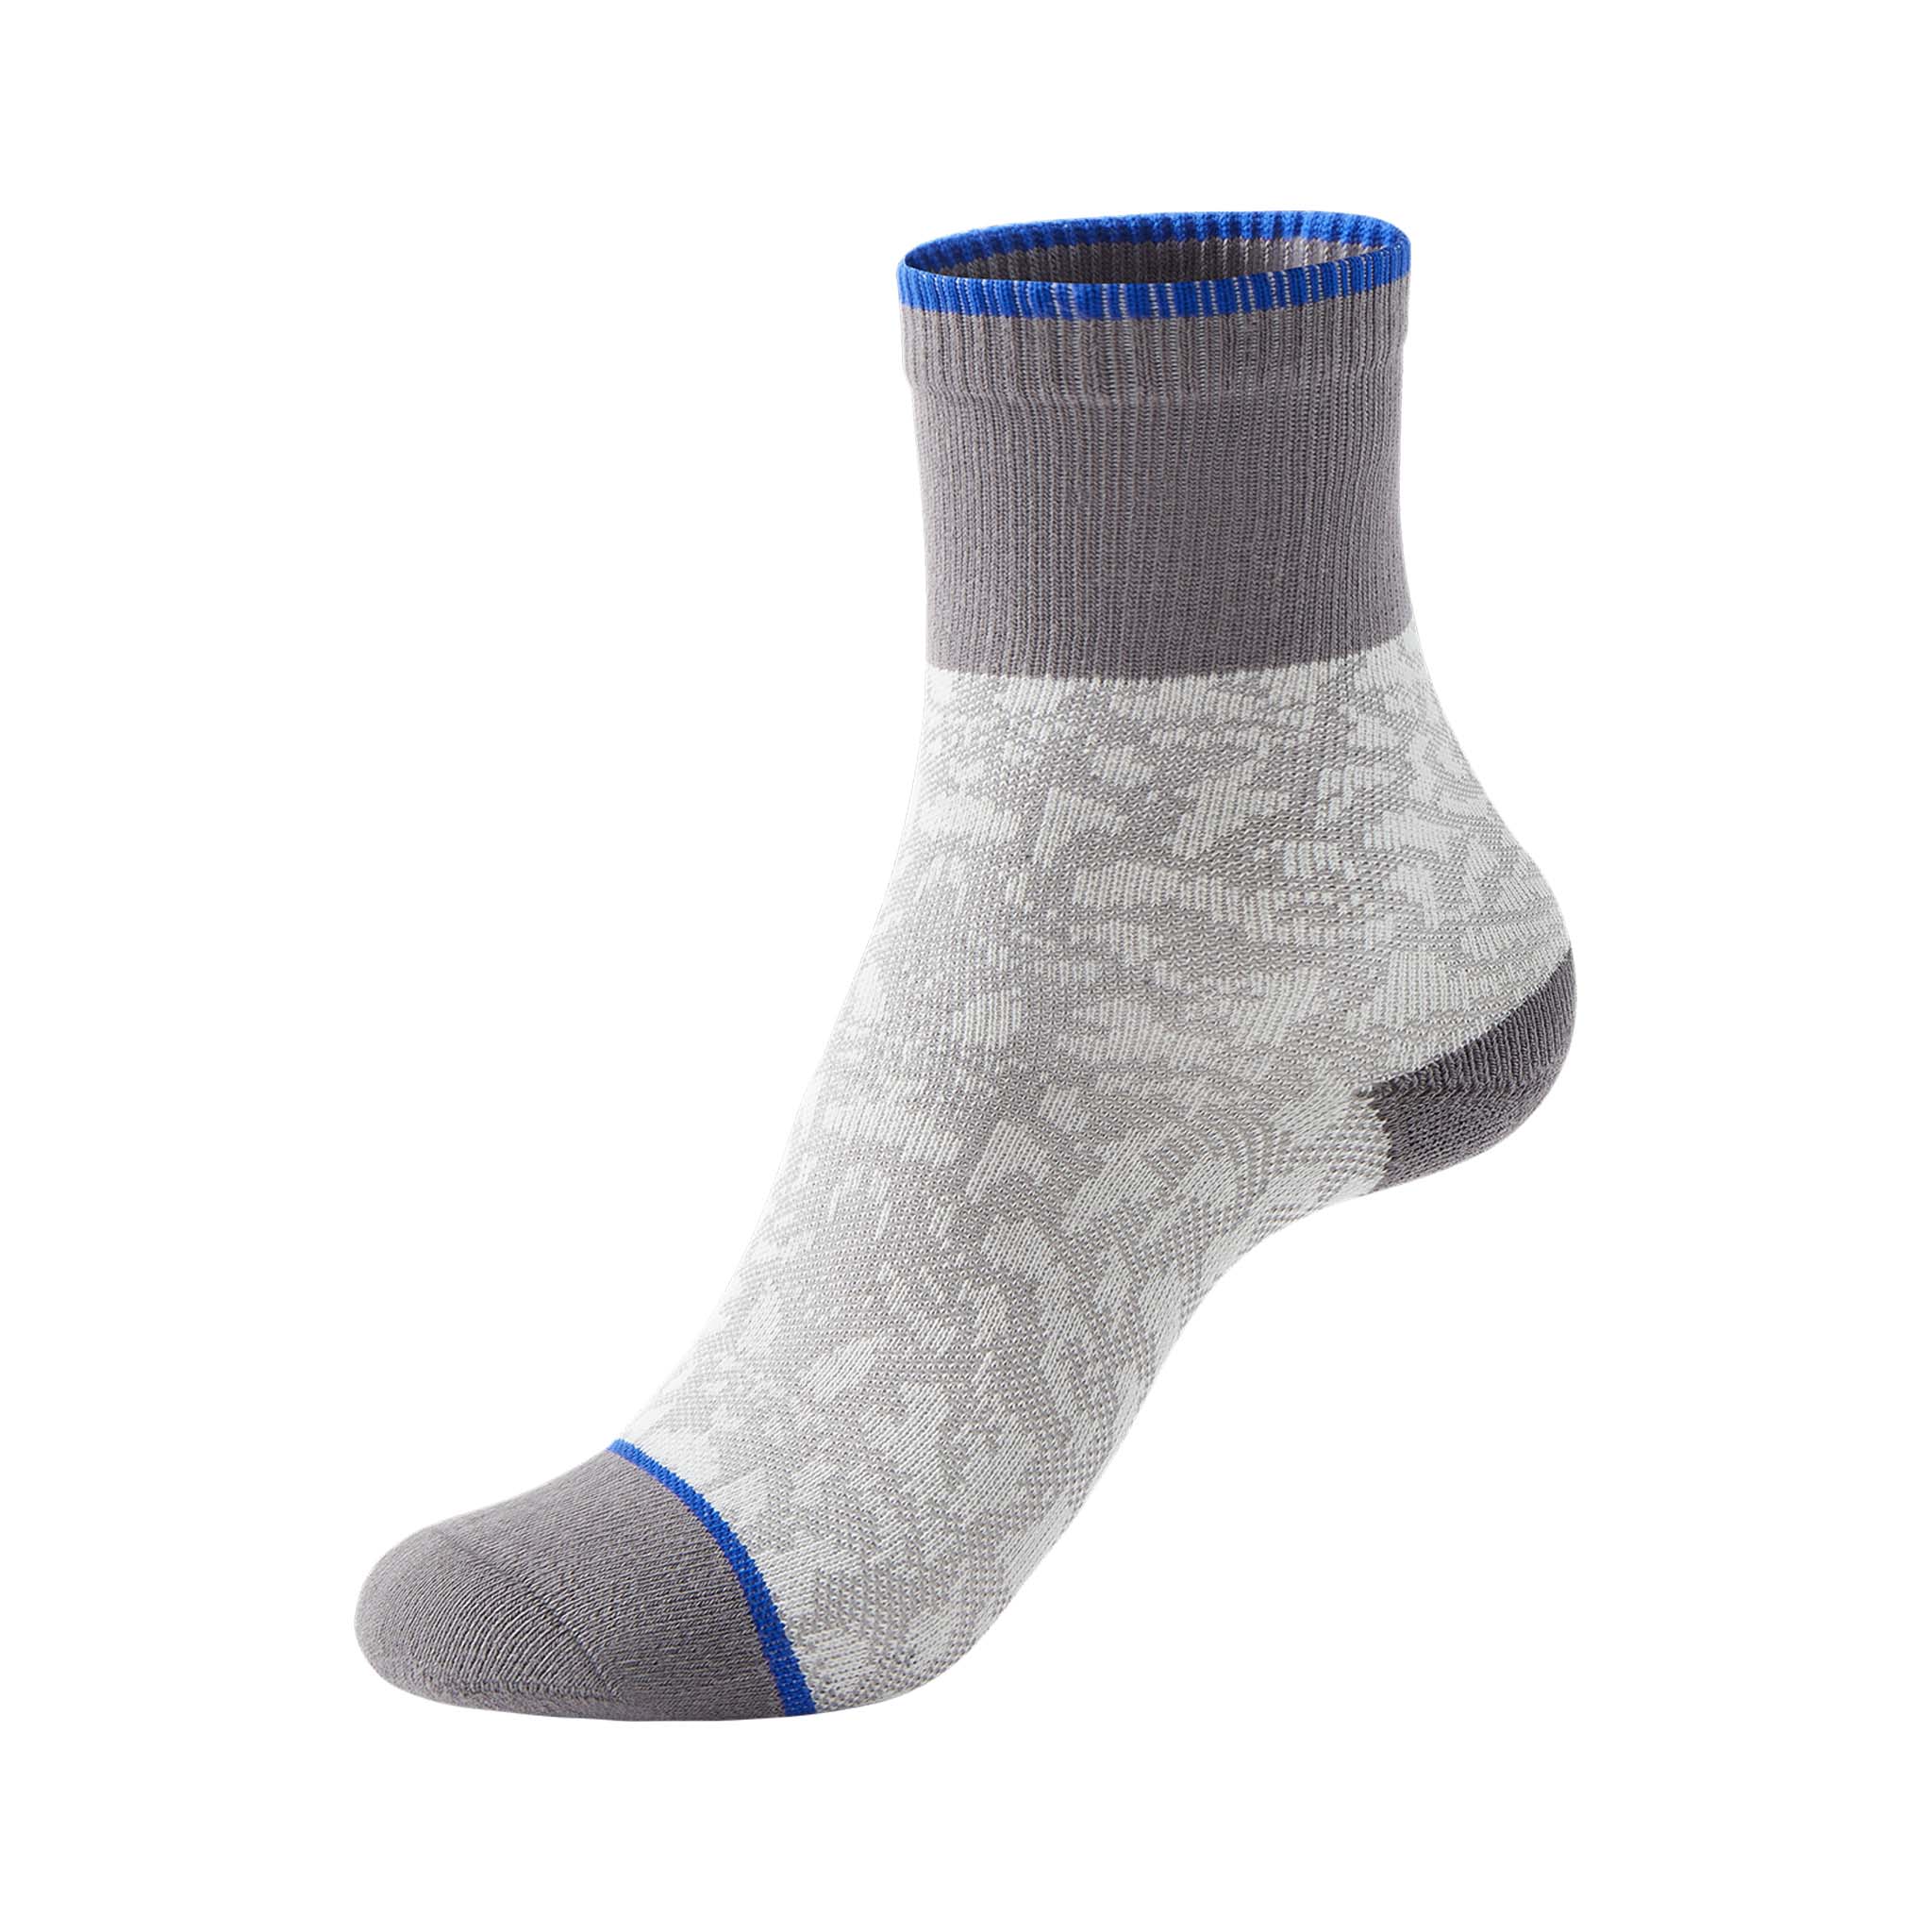 Short Men's Breathable Socks